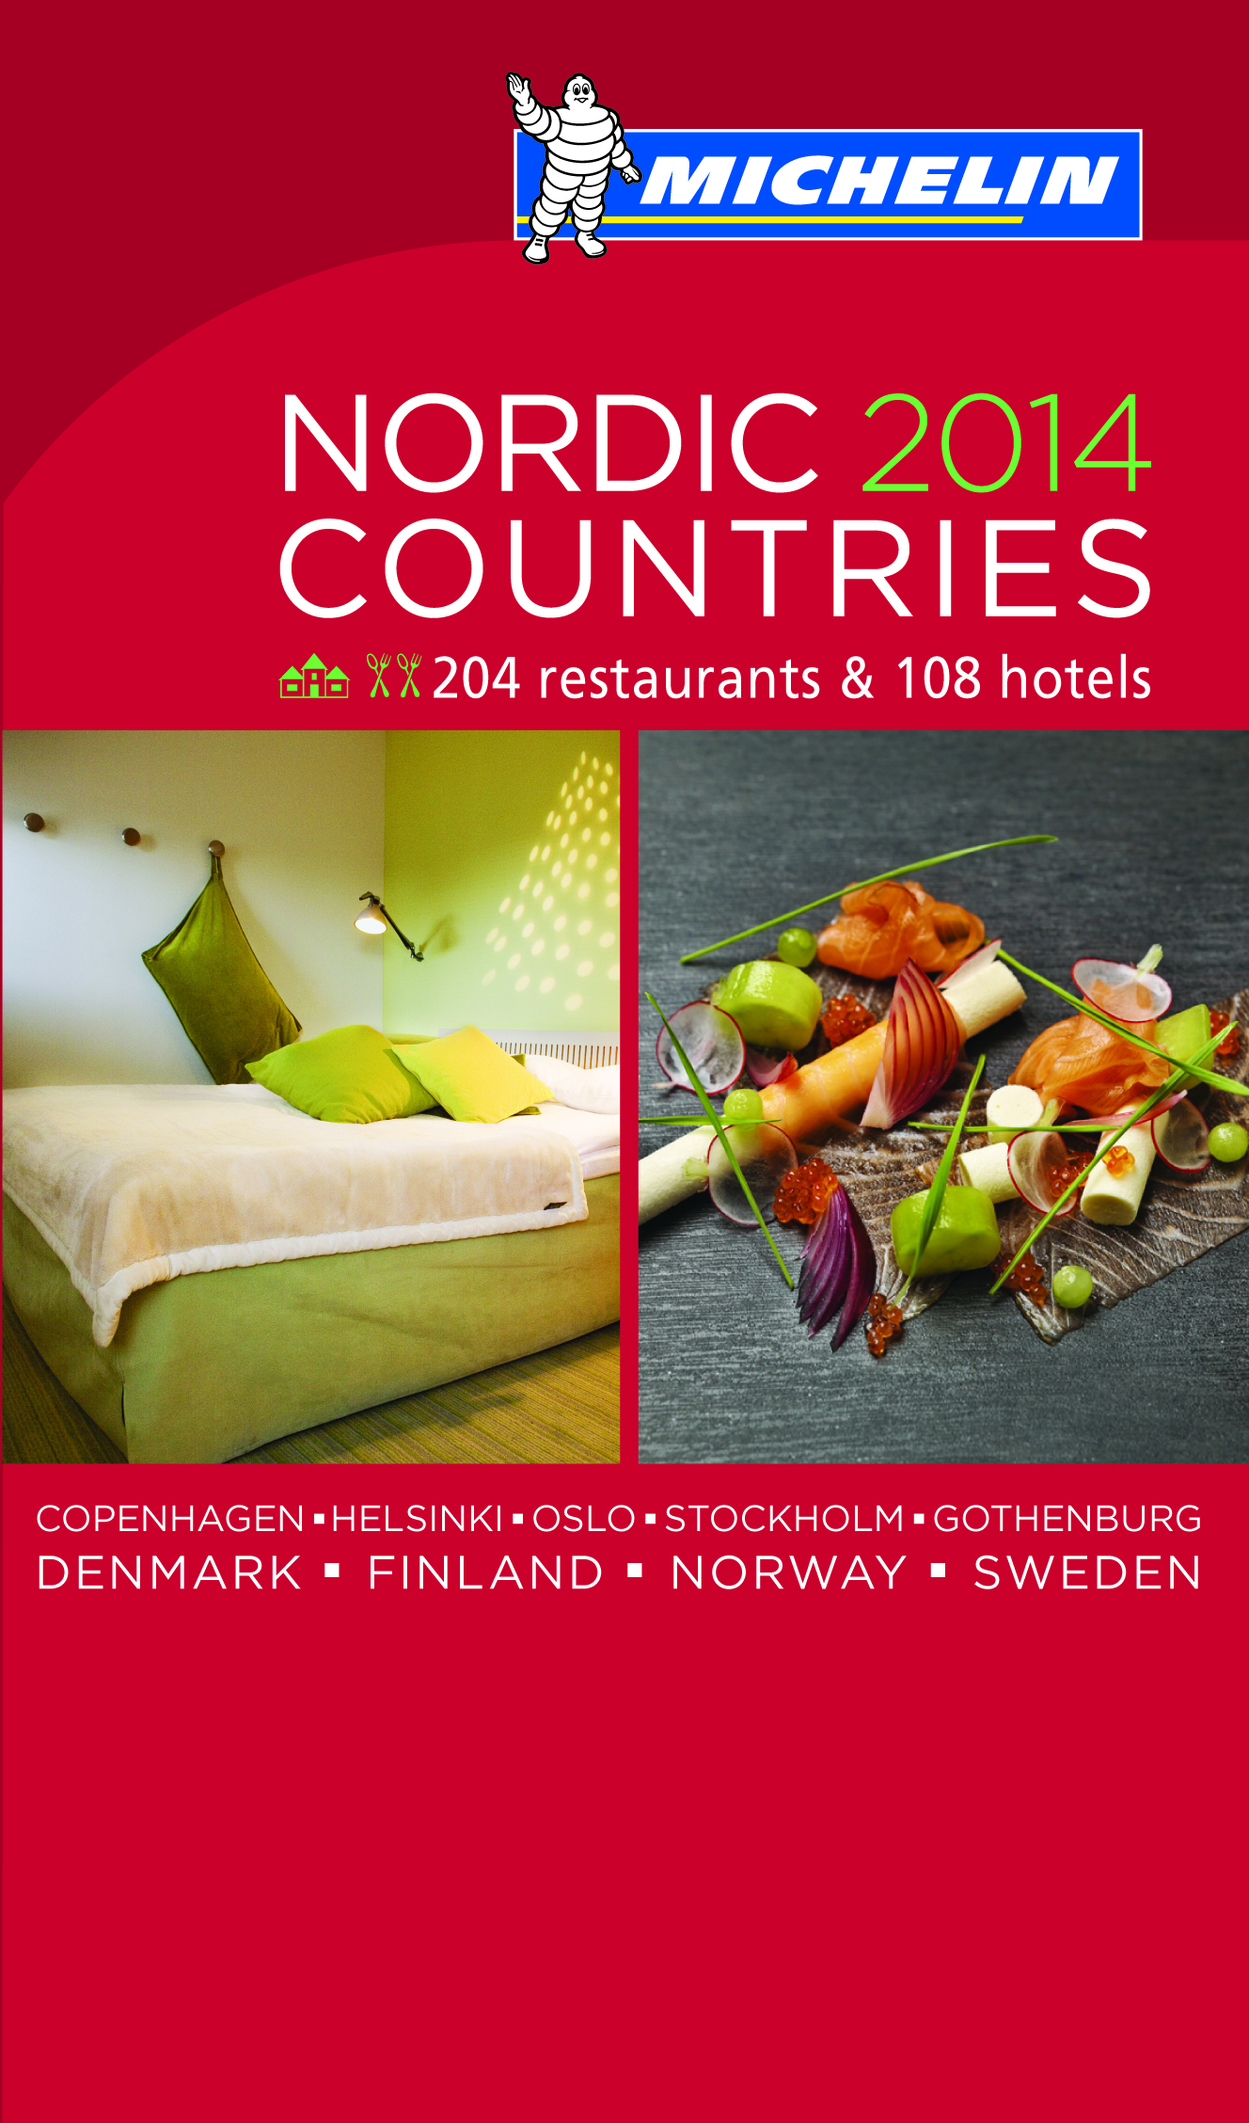 Risultati immagini per The Michelin Guide Nordics 2014